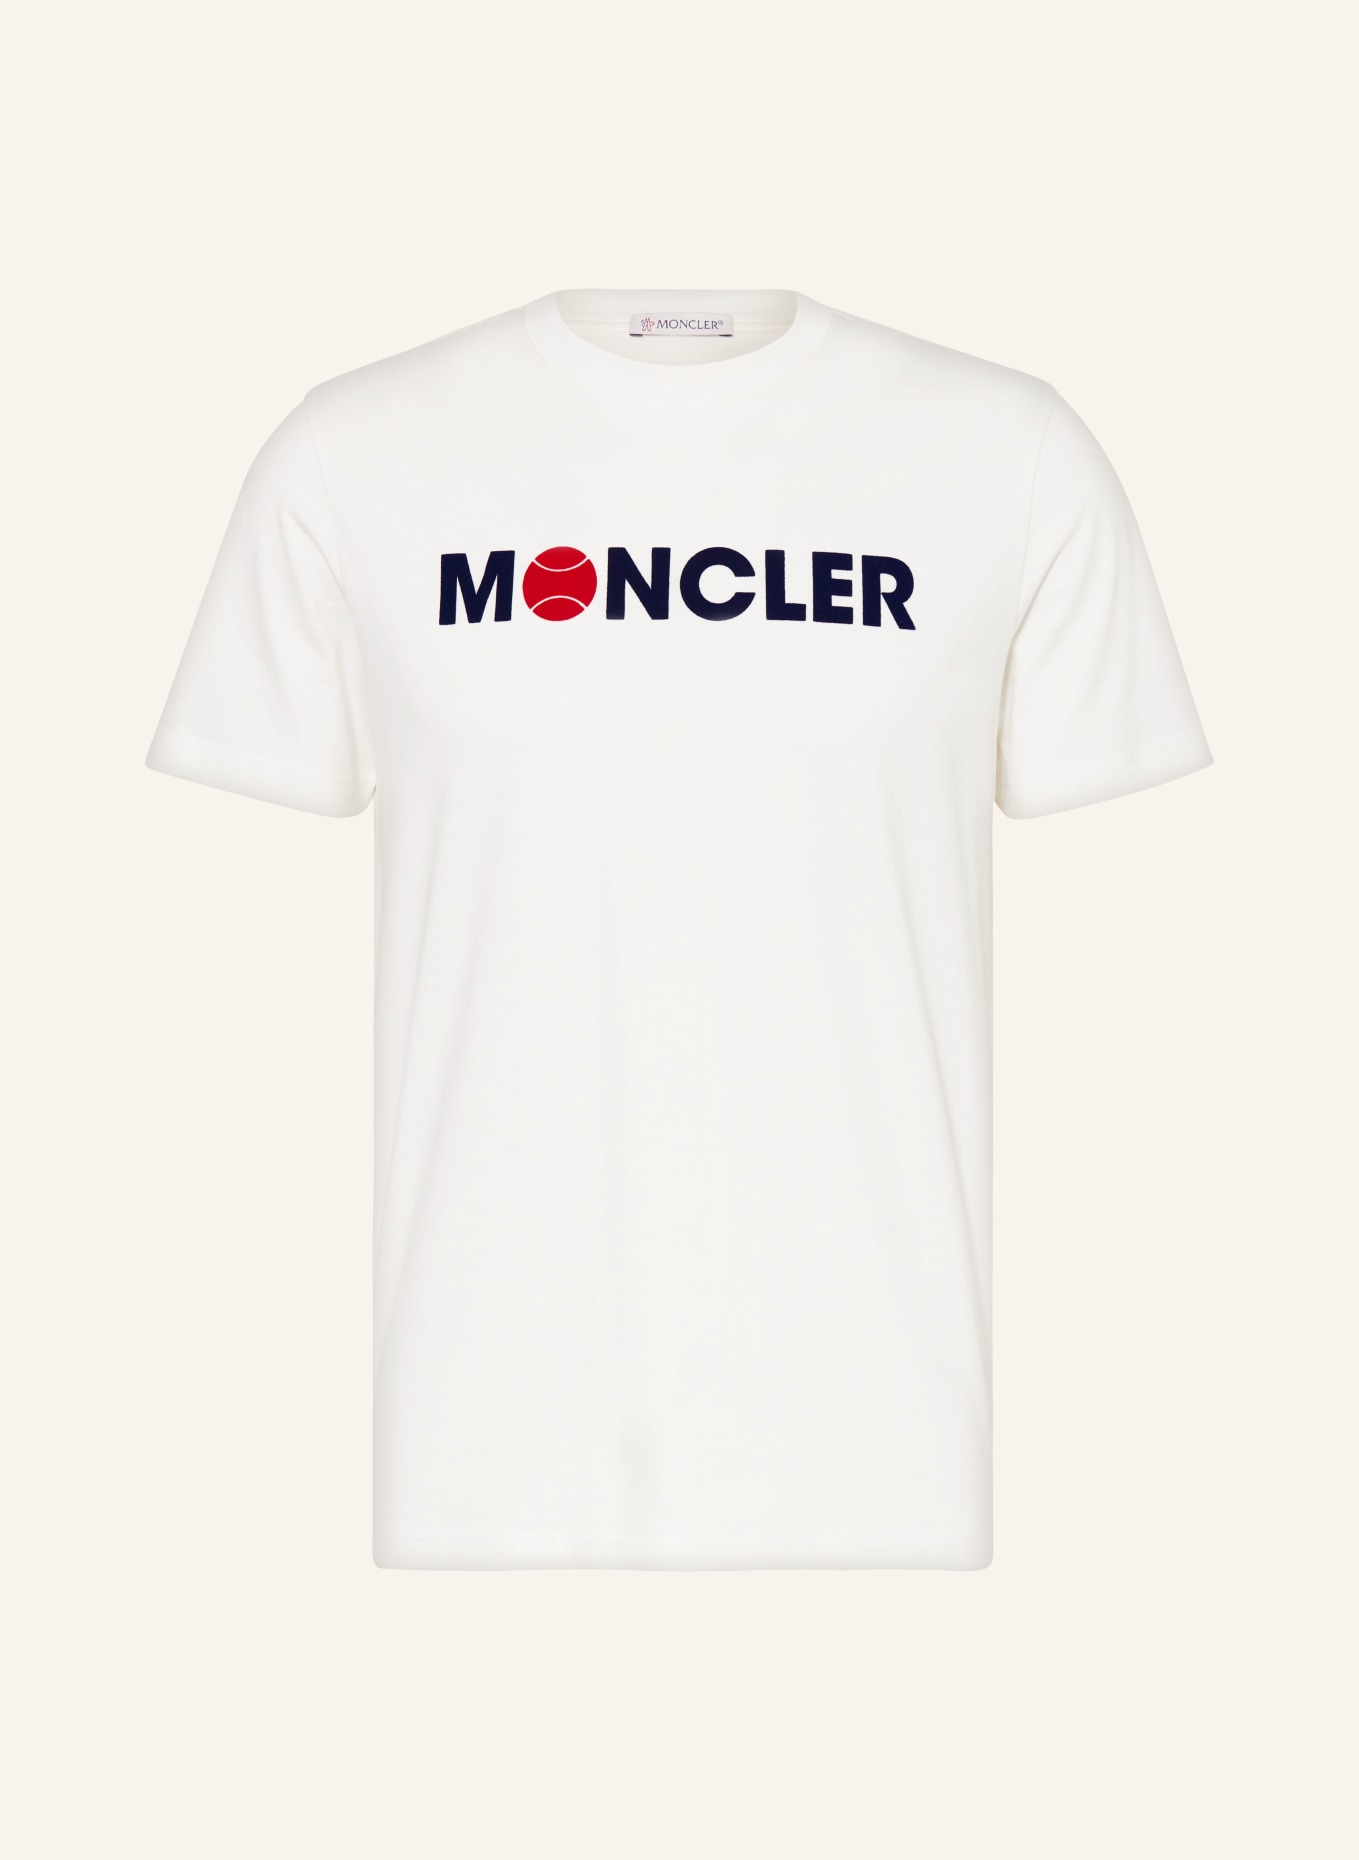 MONCLER T-Shirt, Farbe: WEISS/ DUNKELBLAU/ ROT (Bild 1)